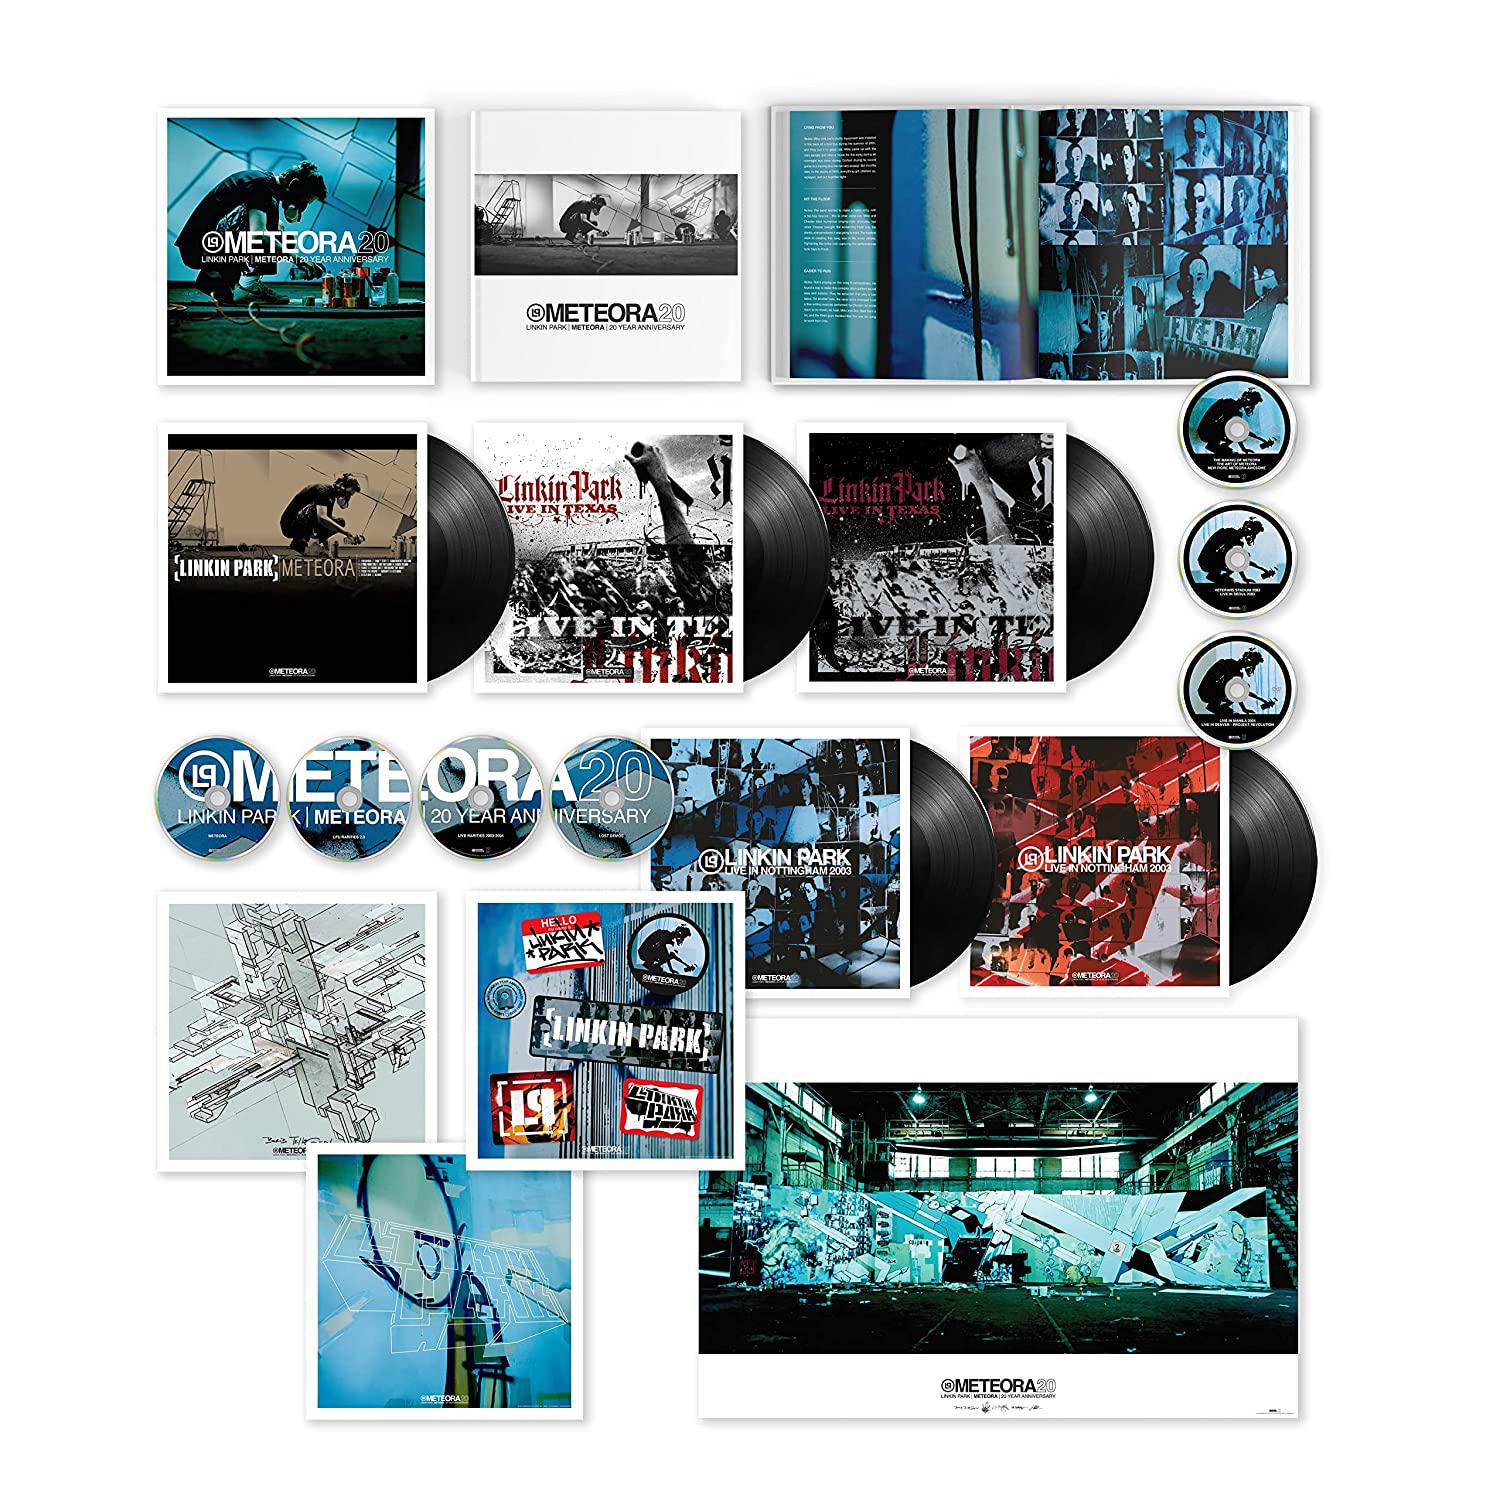 Суперделюкс бокс-сет, выпущенный к 20-летию альбома &laquo;Meteora&raquo; Linkin Park